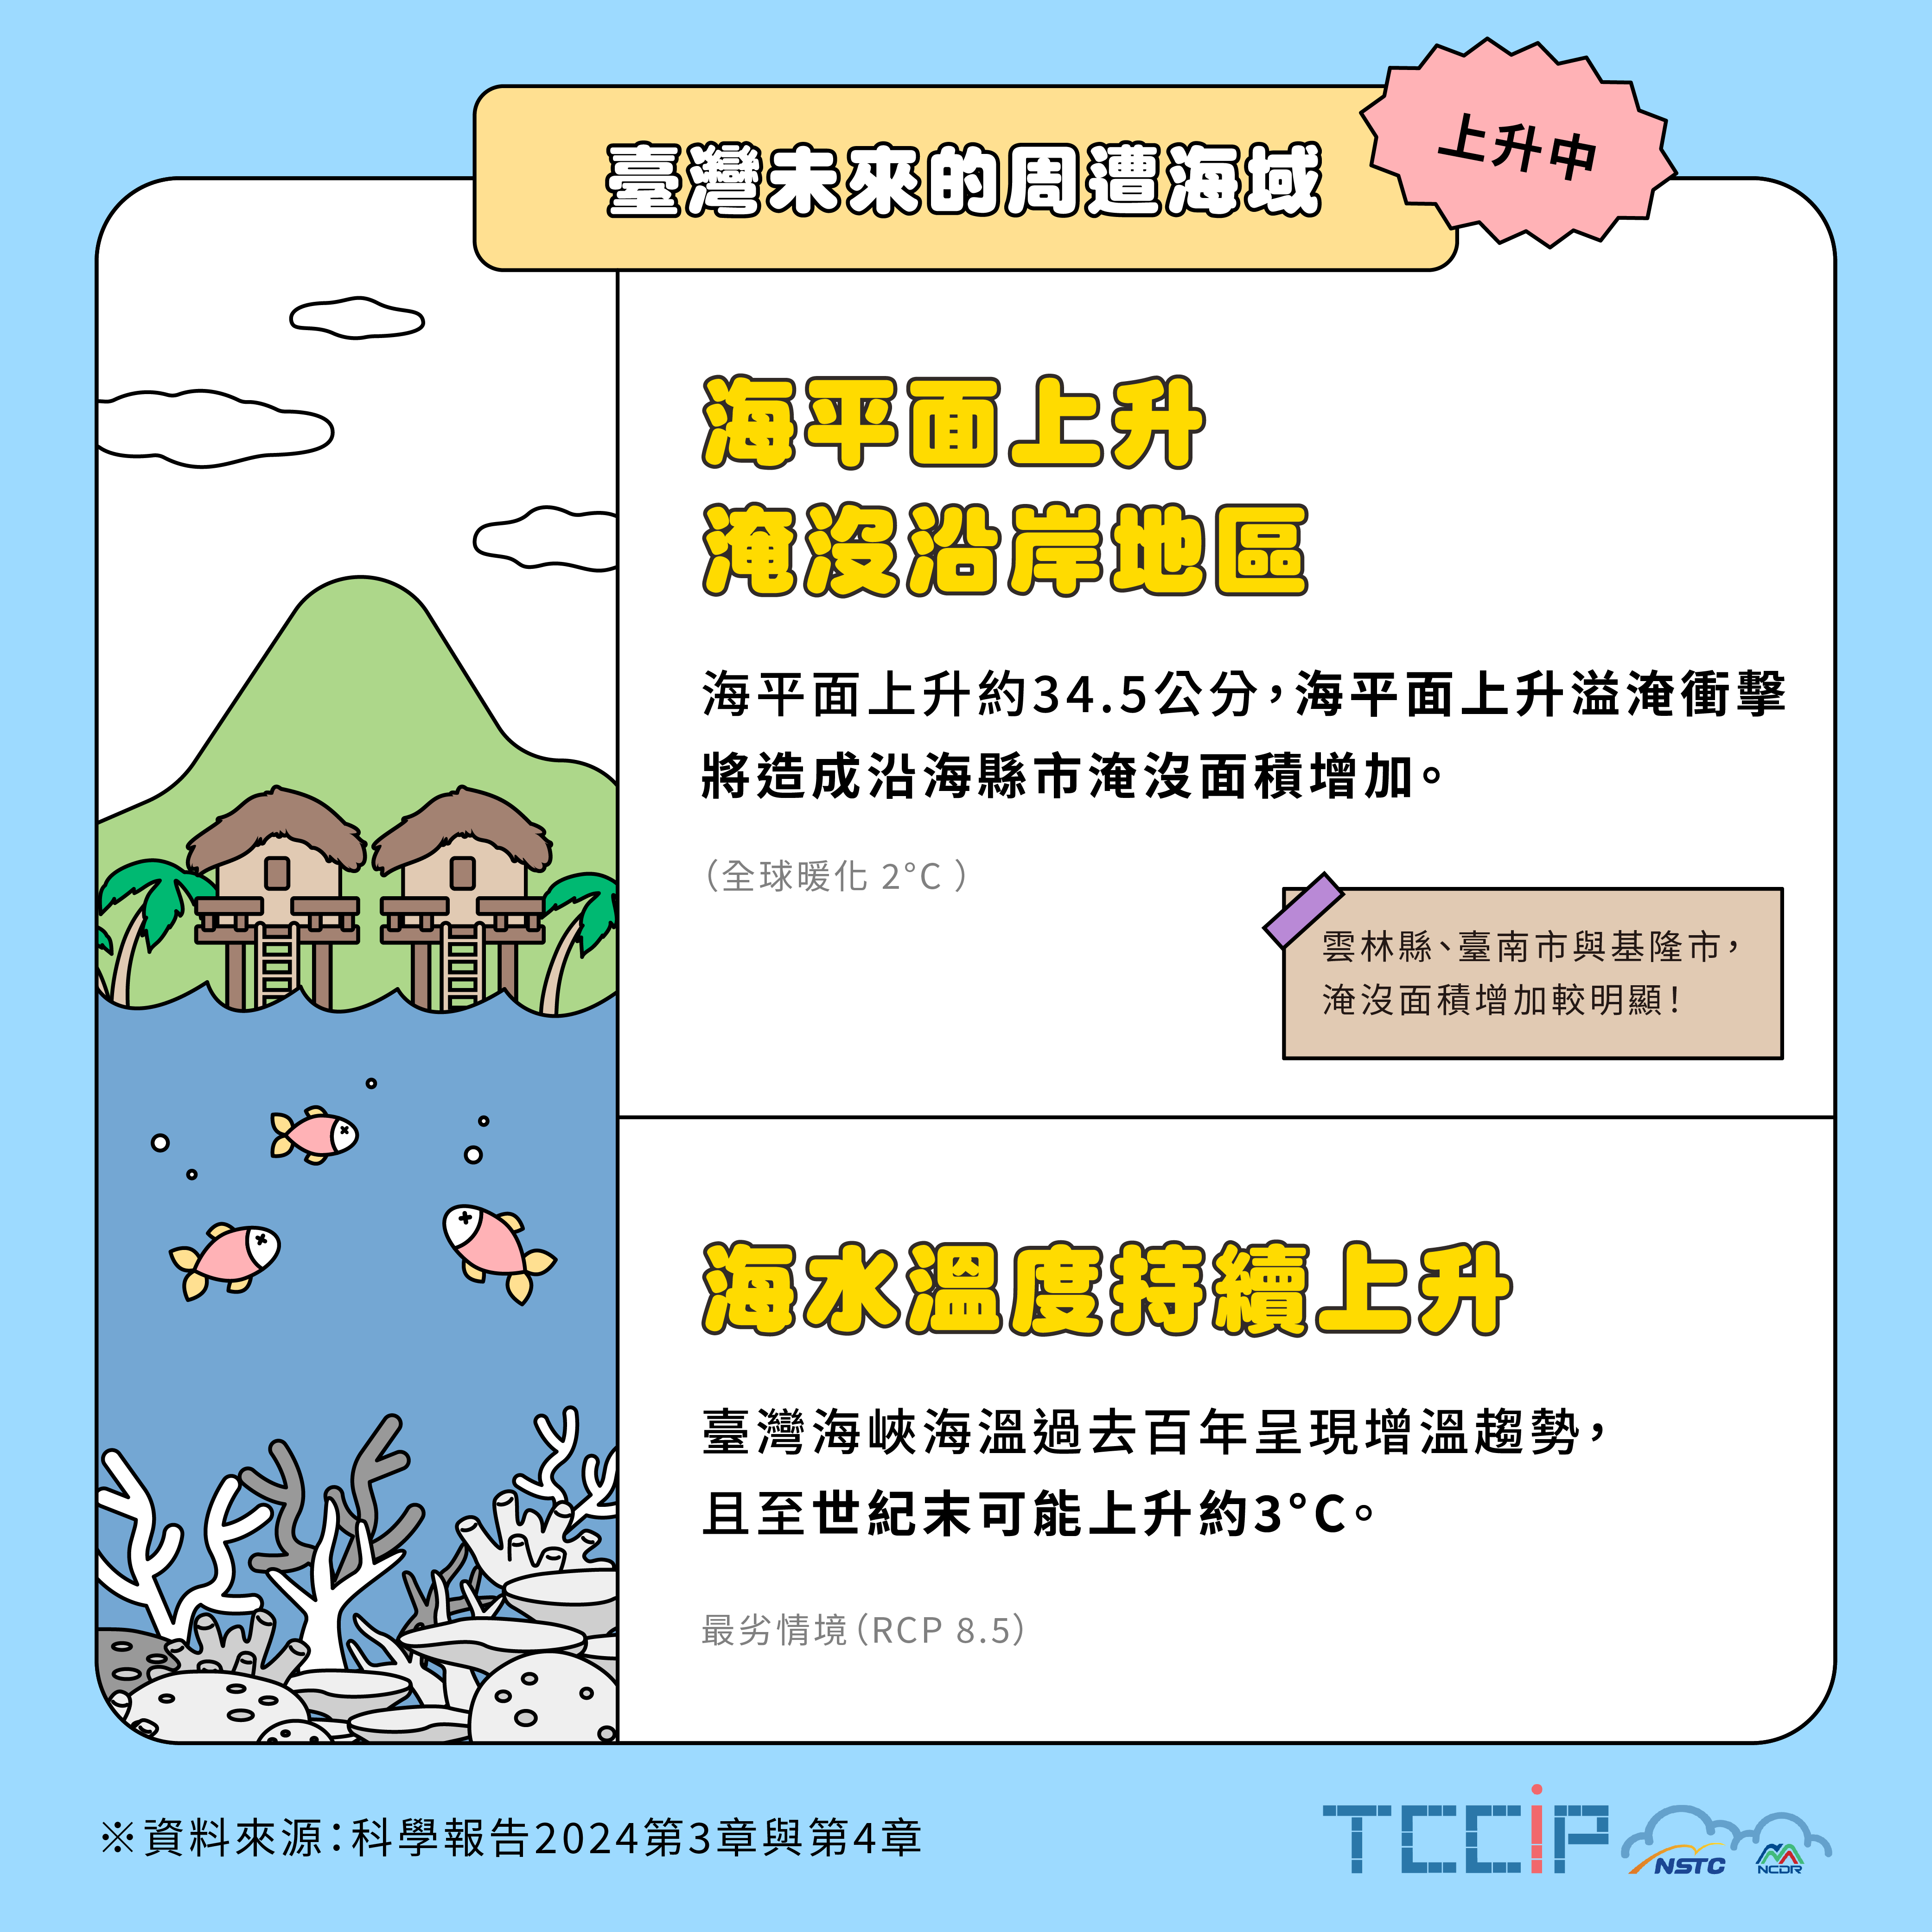 臺灣未來的周遭海域-上升中